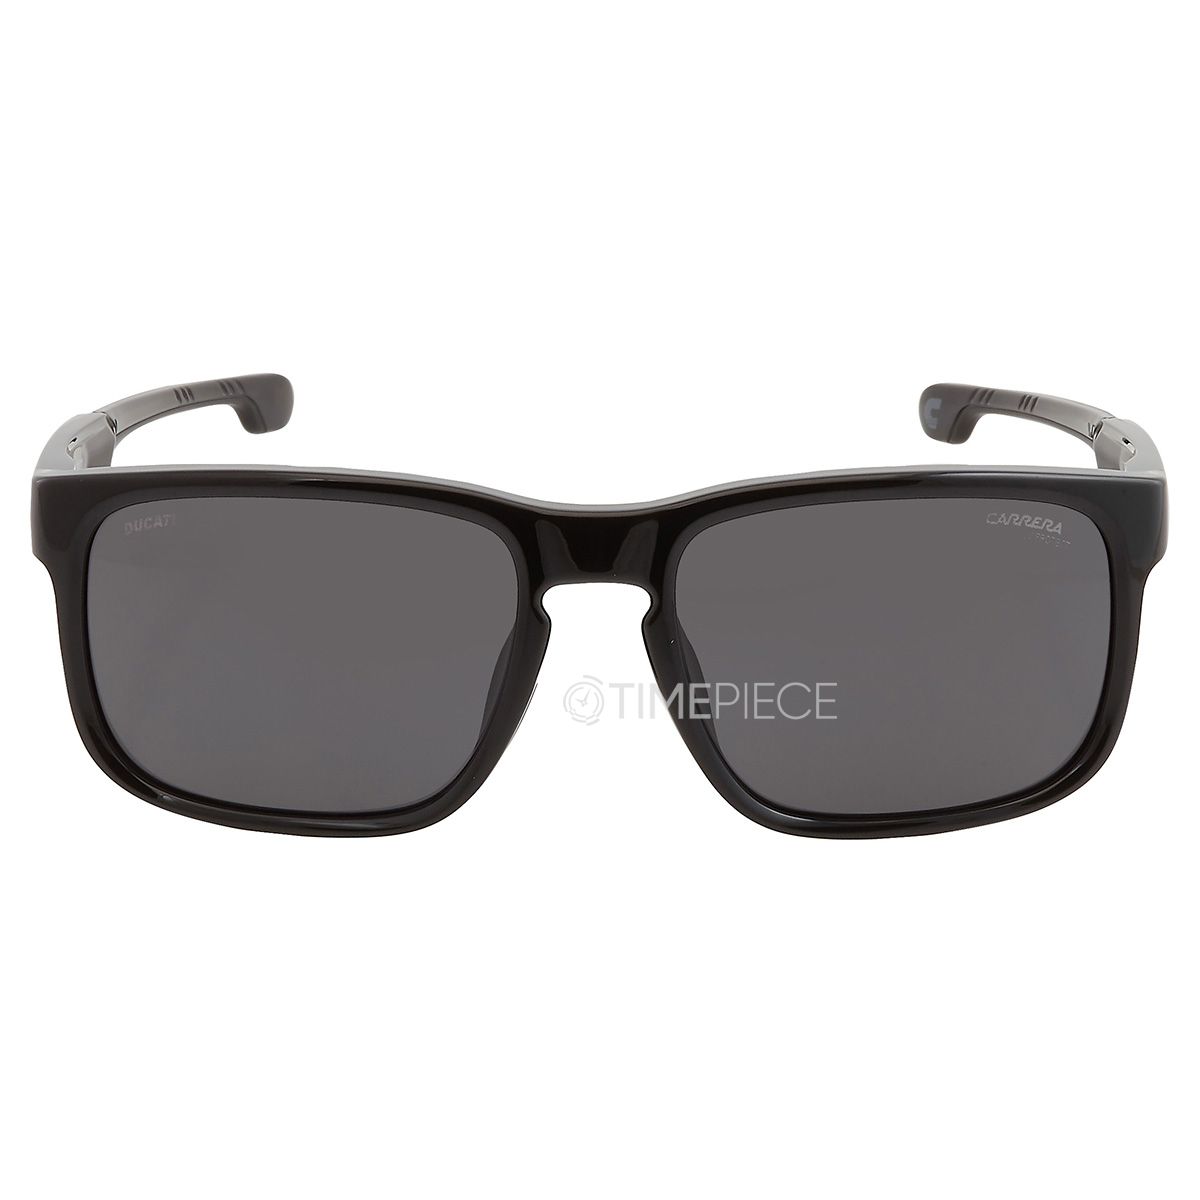 Carrera Grey Square Mens Sunglasses CARRERA DUCATI 001/S 0807/IR 57